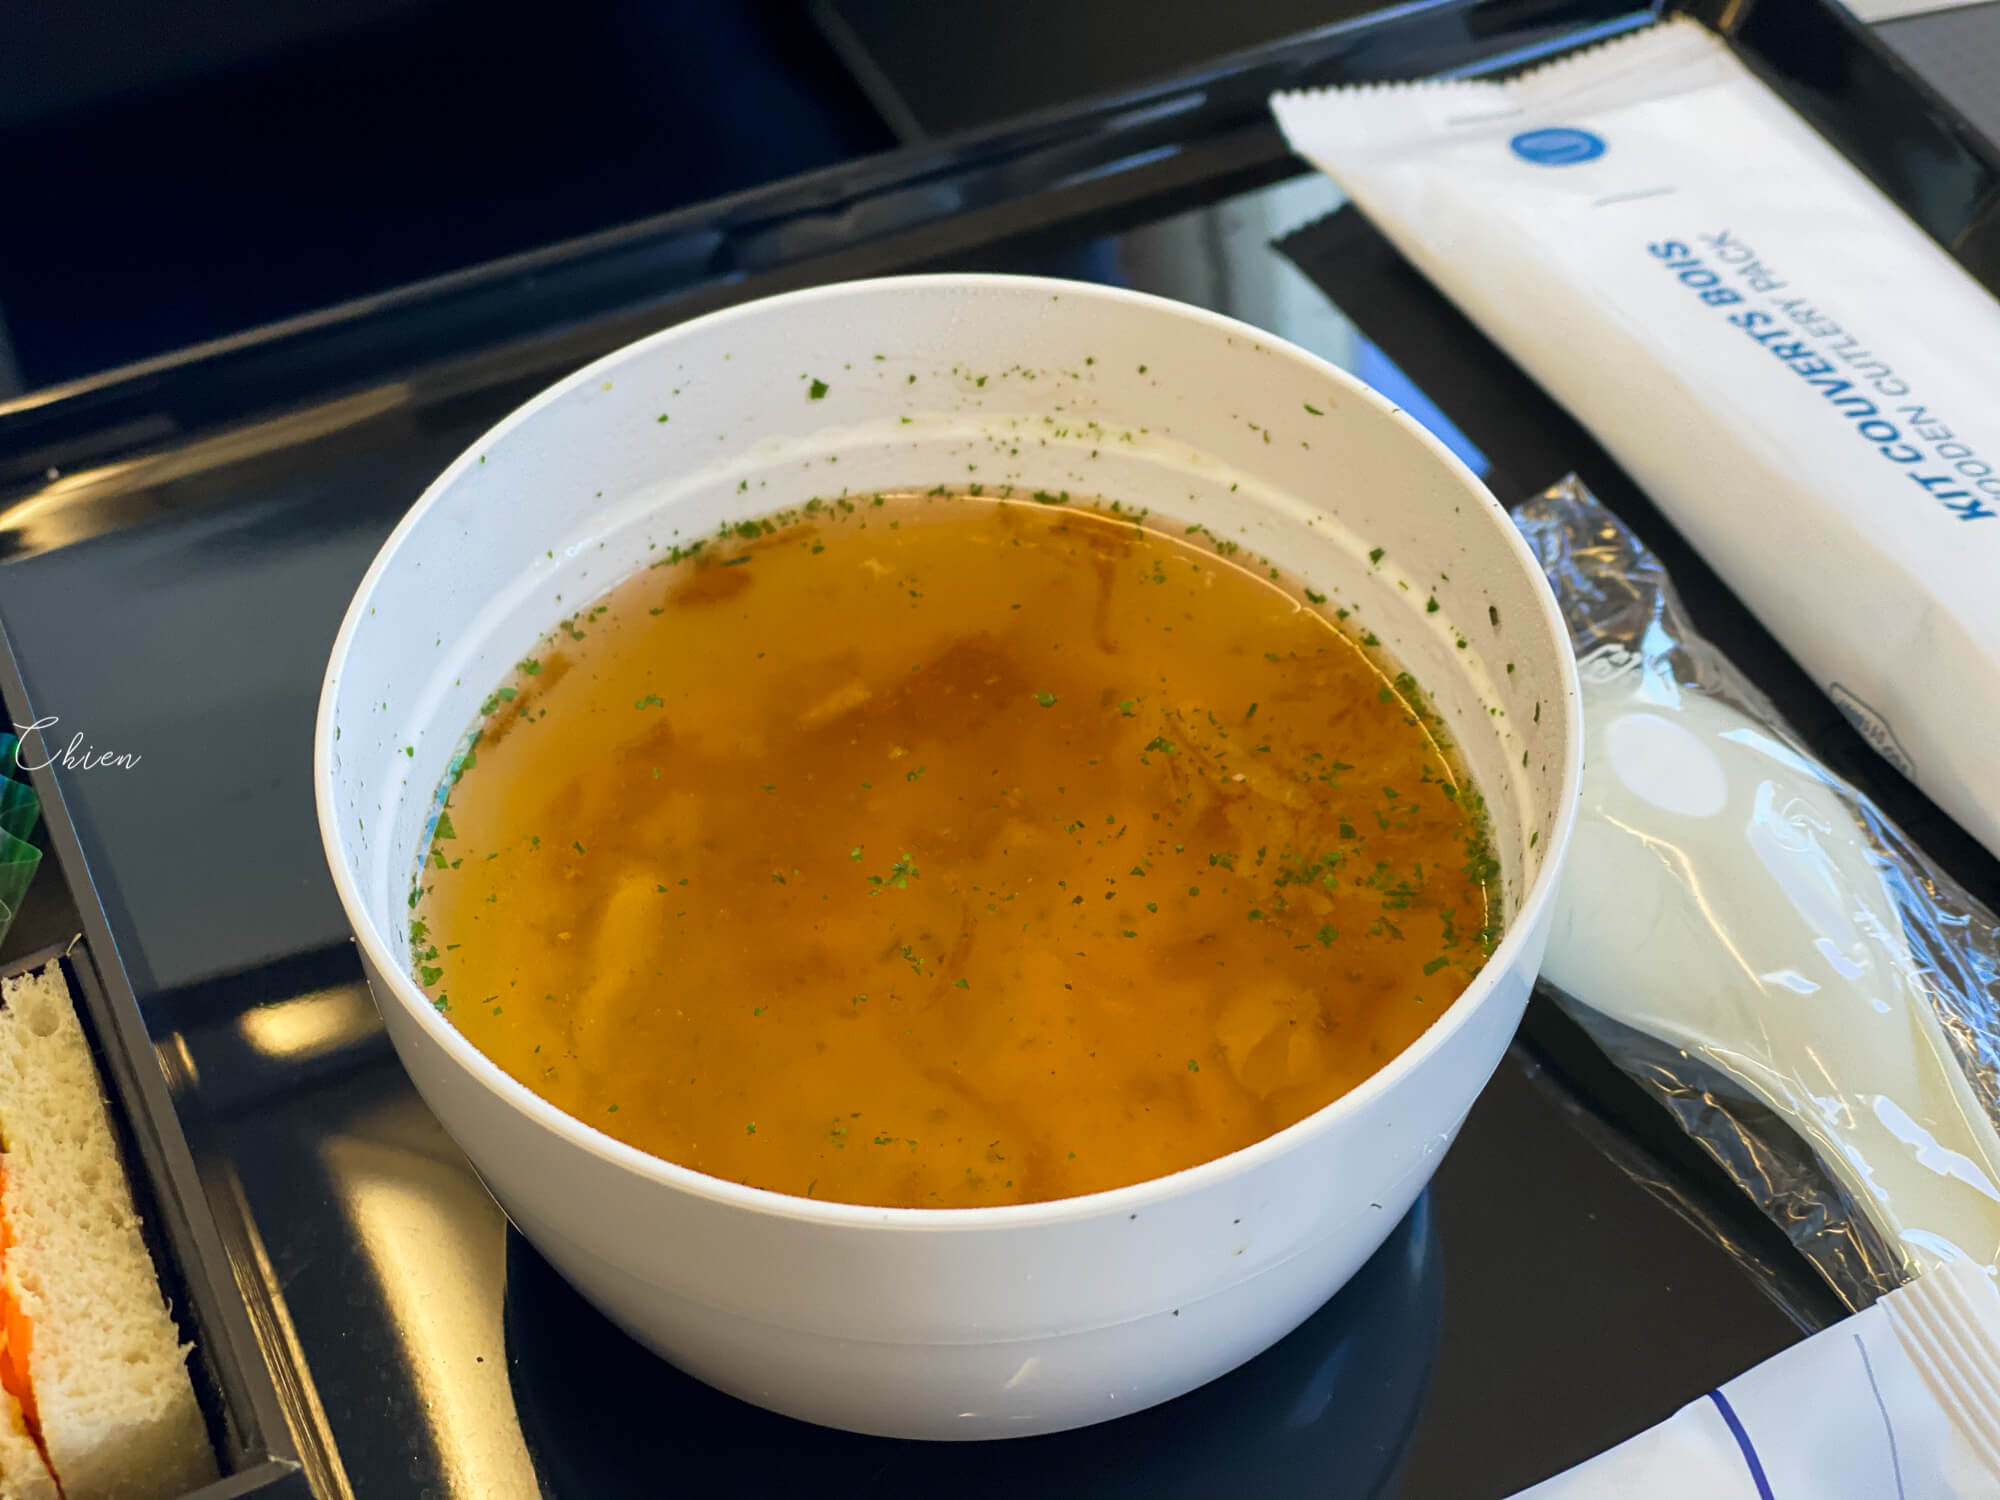 ANA全日空 Airbus A320neo 飛機餐食